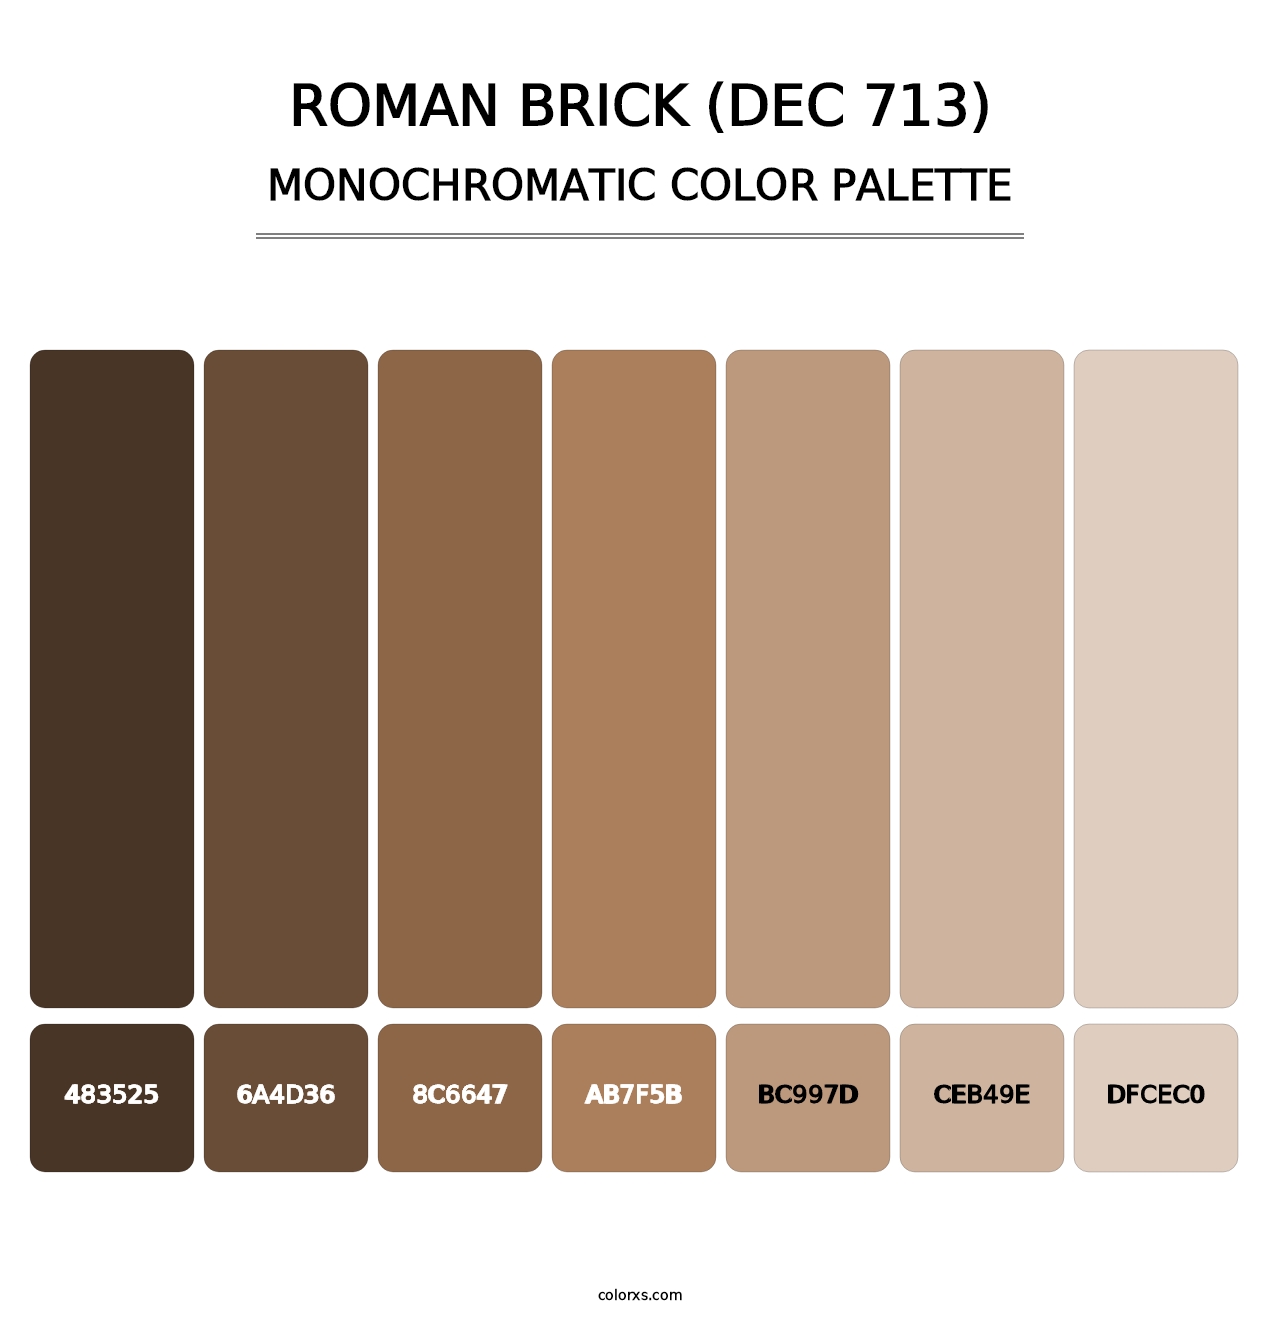 Roman Brick (DEC 713) - Monochromatic Color Palette